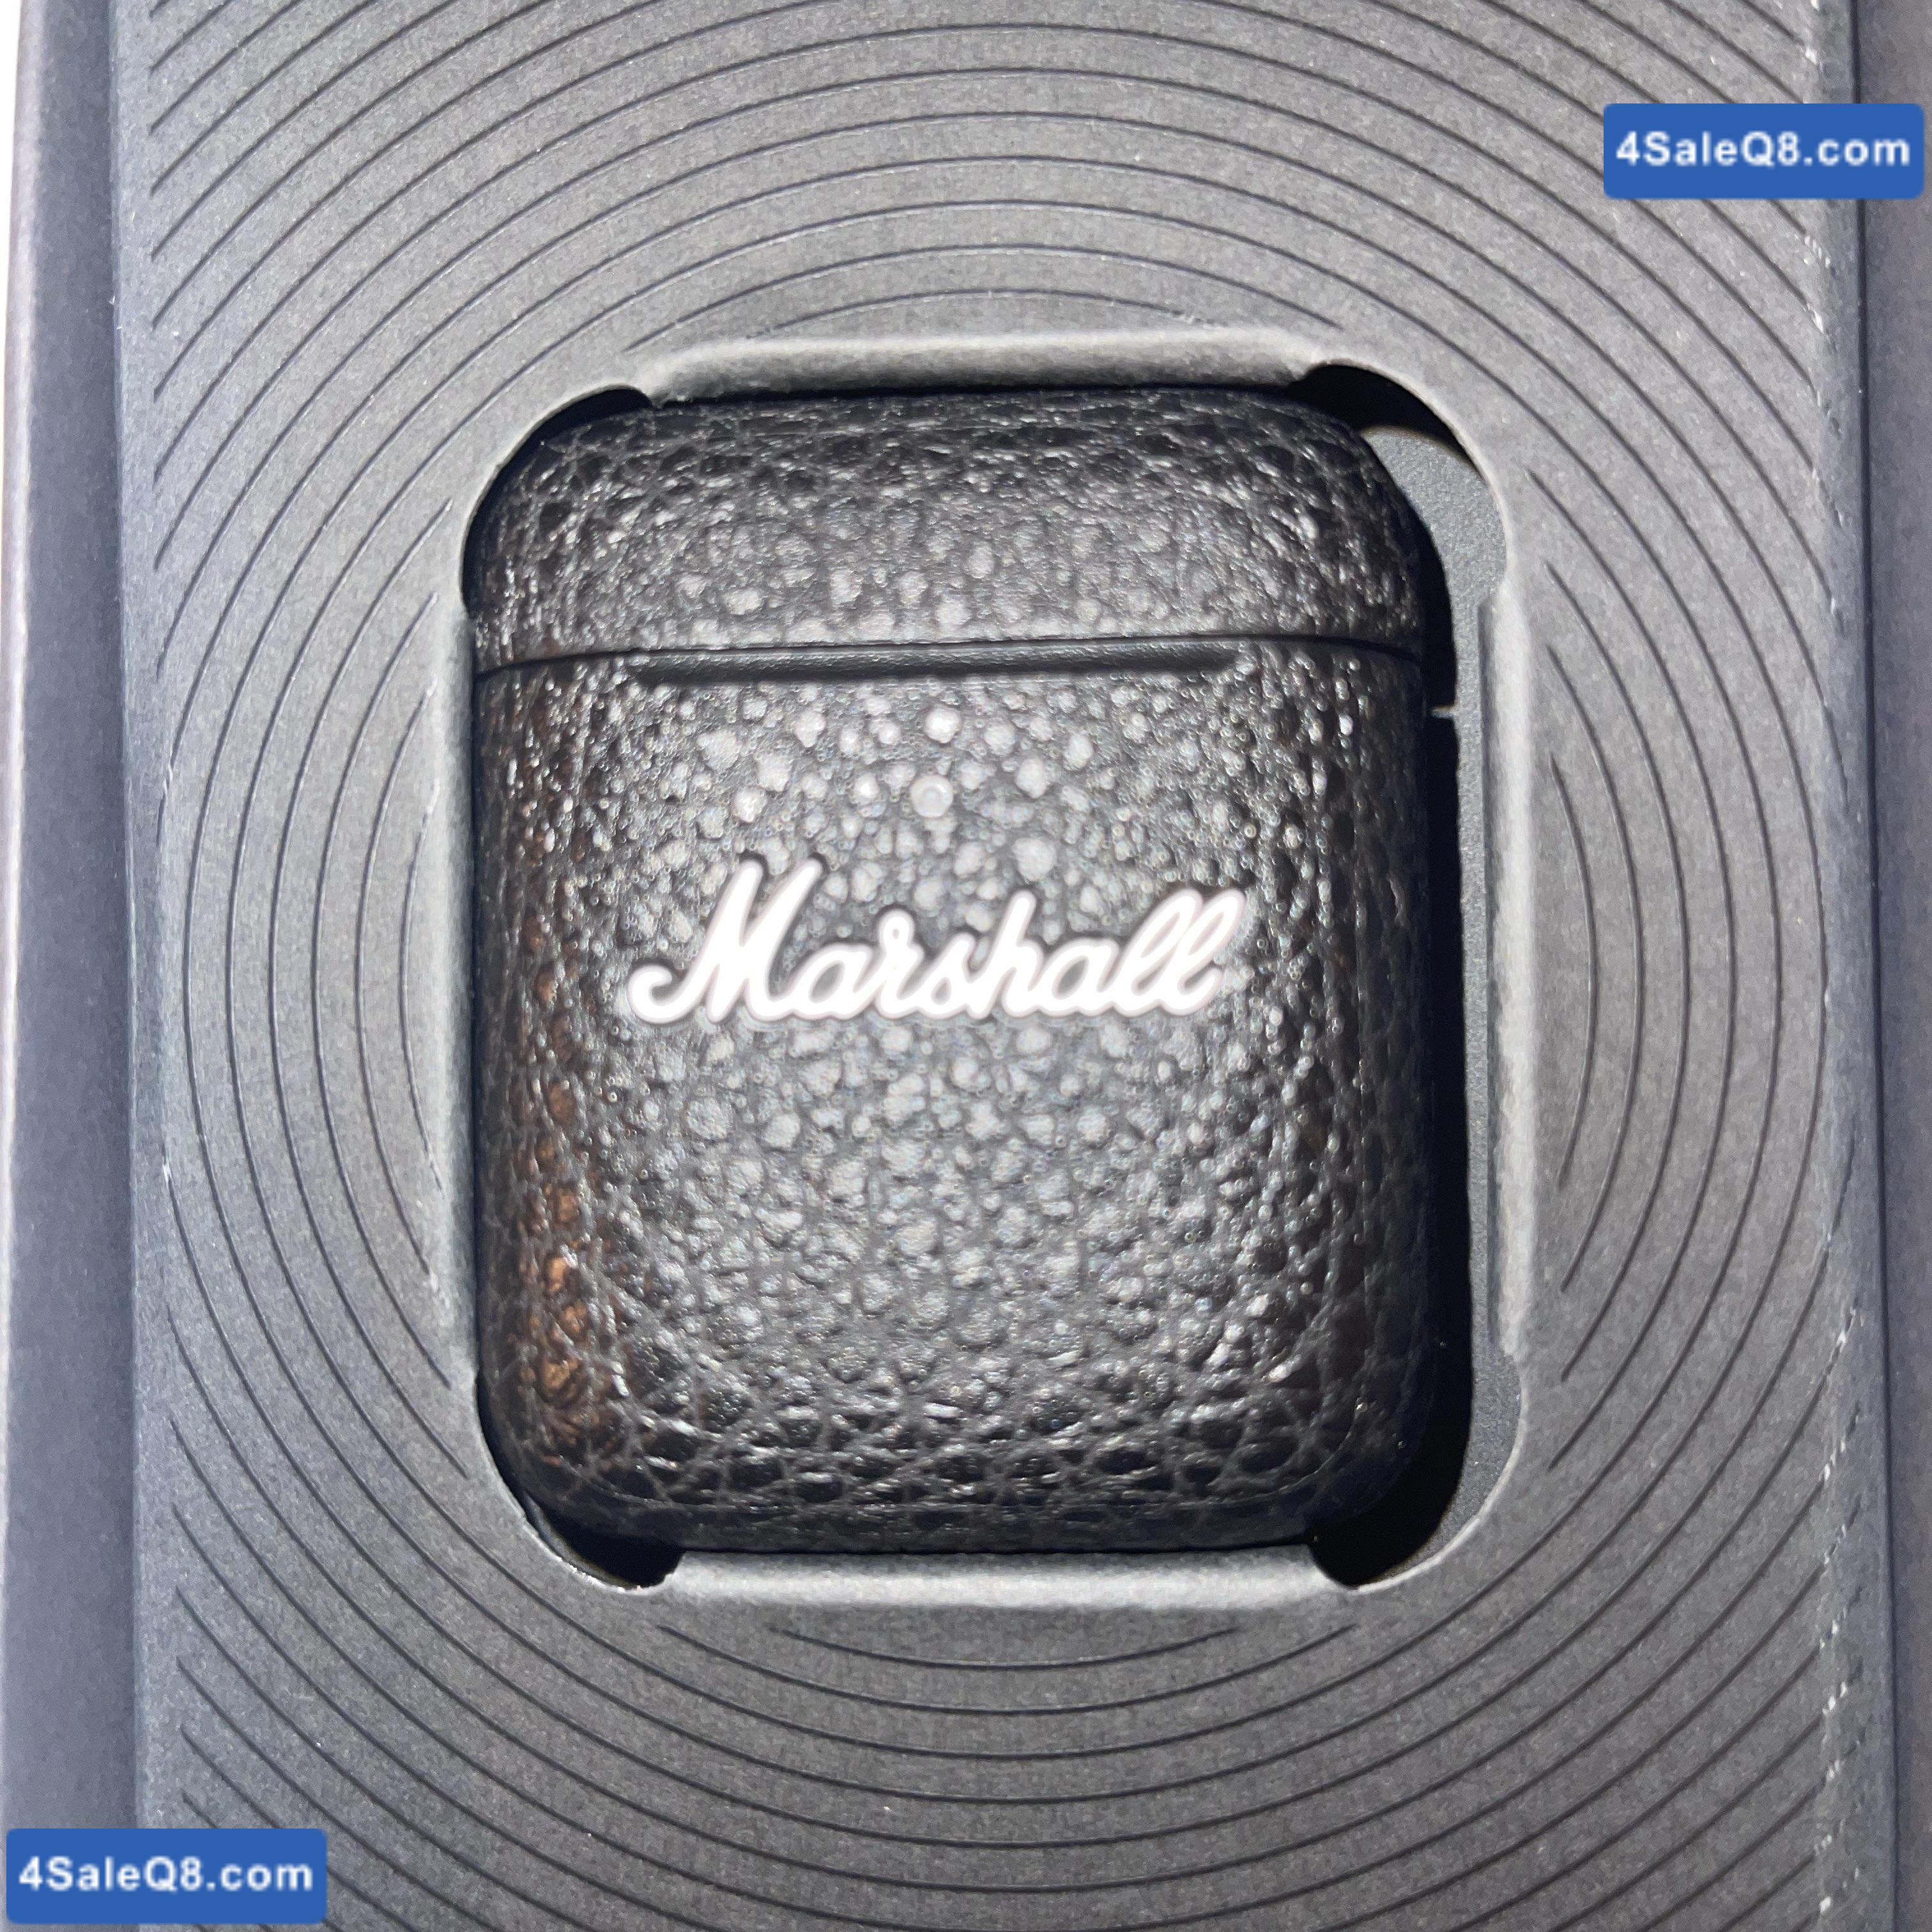 marshall bluetooth minor ||| earbuds